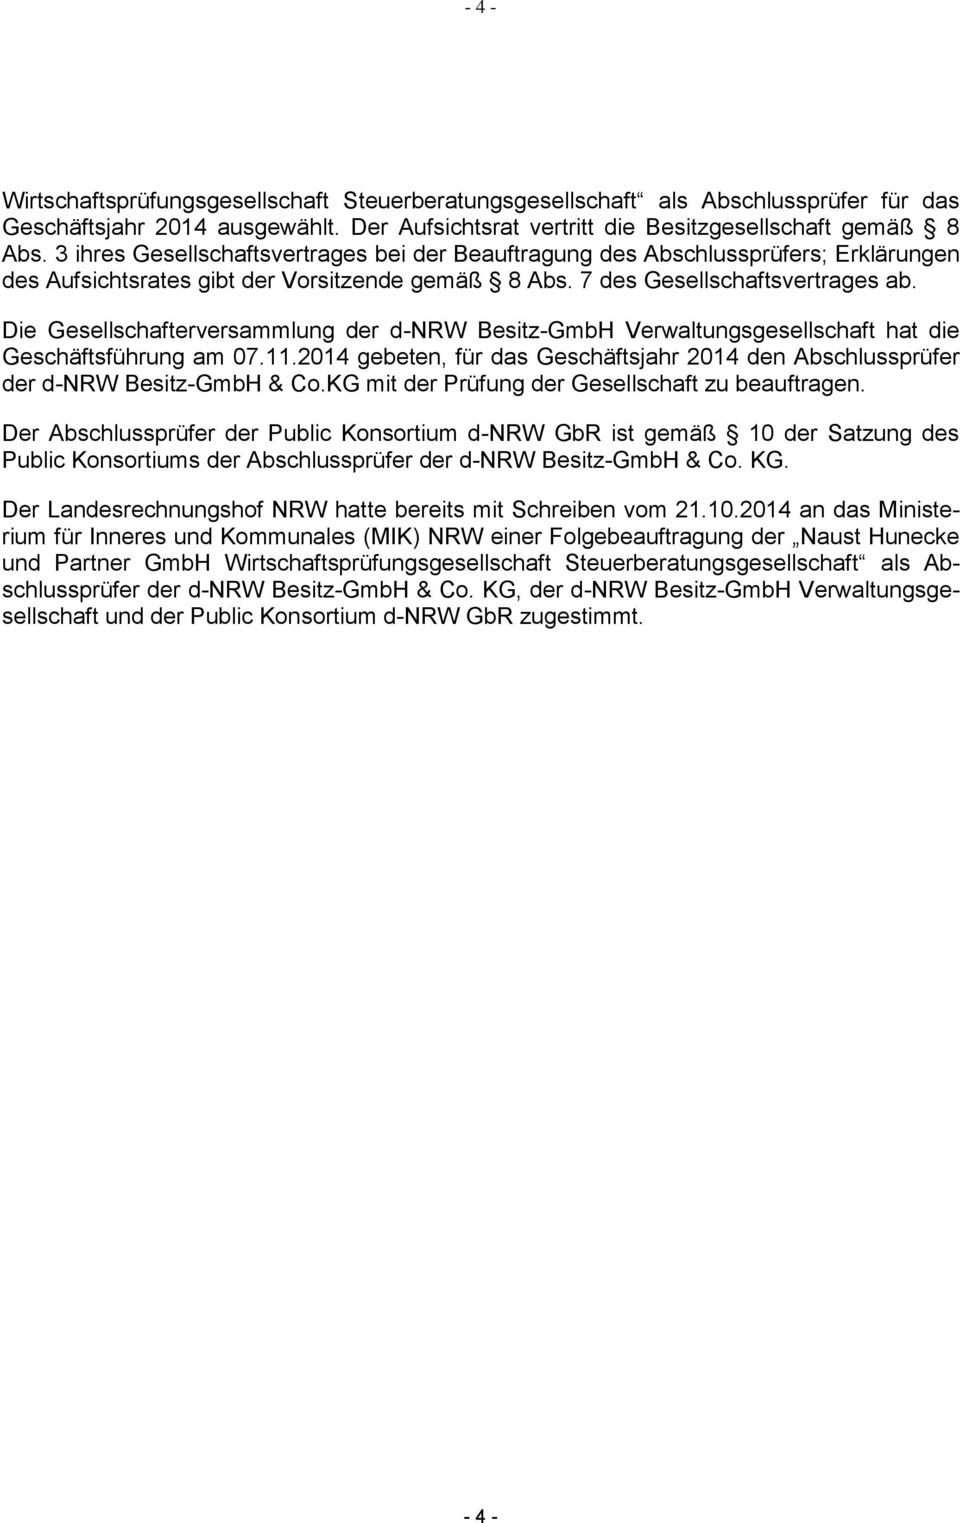 Die Gesellschafterversammlung der d-nrw Besitz-GmbH Verwaltungsgesellschaft hat die Geschäftsführung am 07.11.2014 gebeten, für das Geschäftsjahr 2014 den Abschlussprüfer der d-nrw Besitz-GmbH & Co.